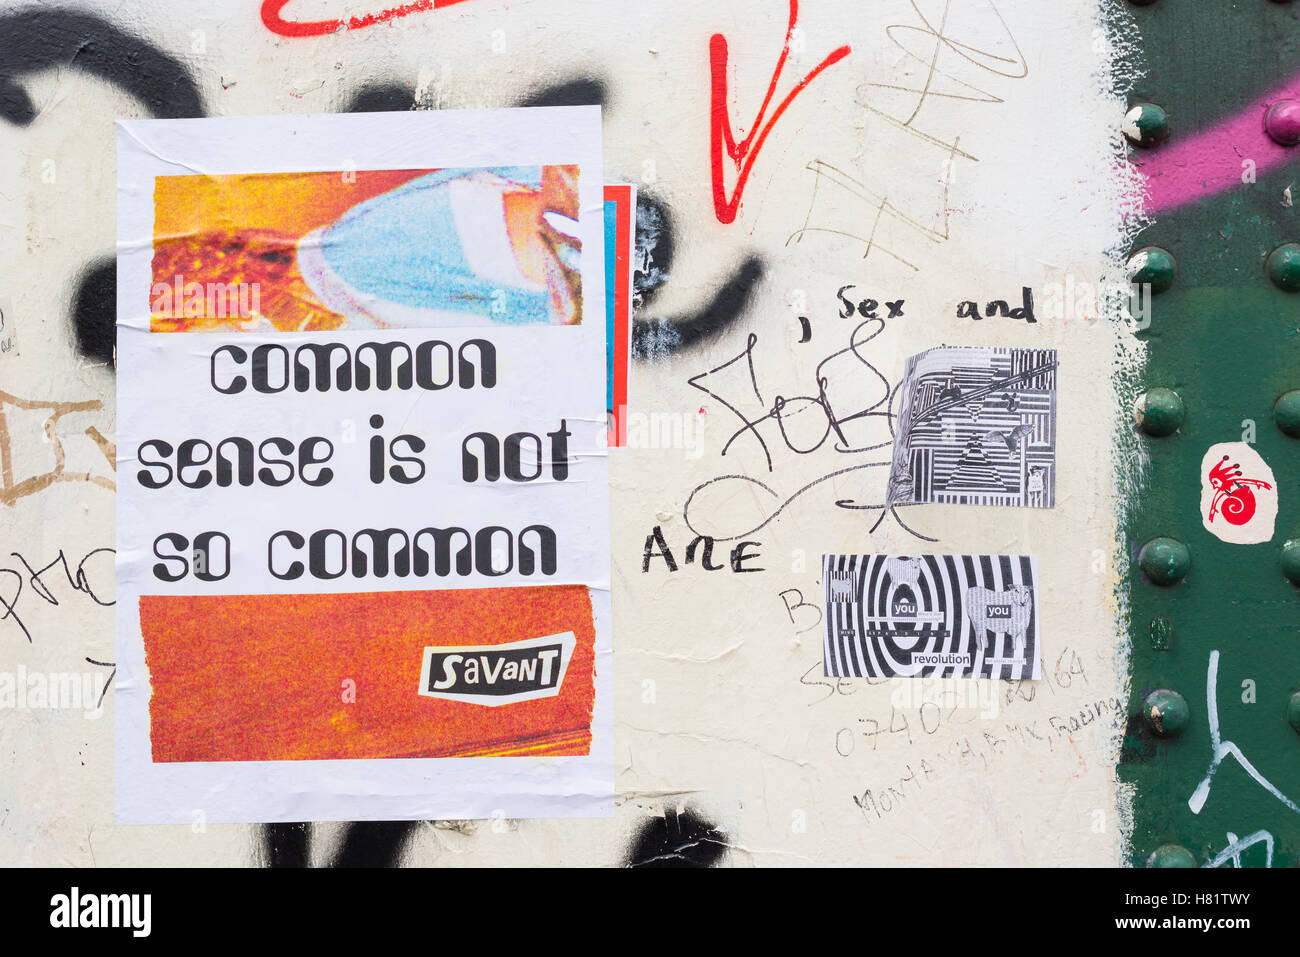 Street-Art-Plakat angebracht an einer Wand mit Zitat von Voltaire "gesunder Menschenverstand ist nicht so häufig" darauf von Streetart-Künstler Savant. Stockfoto